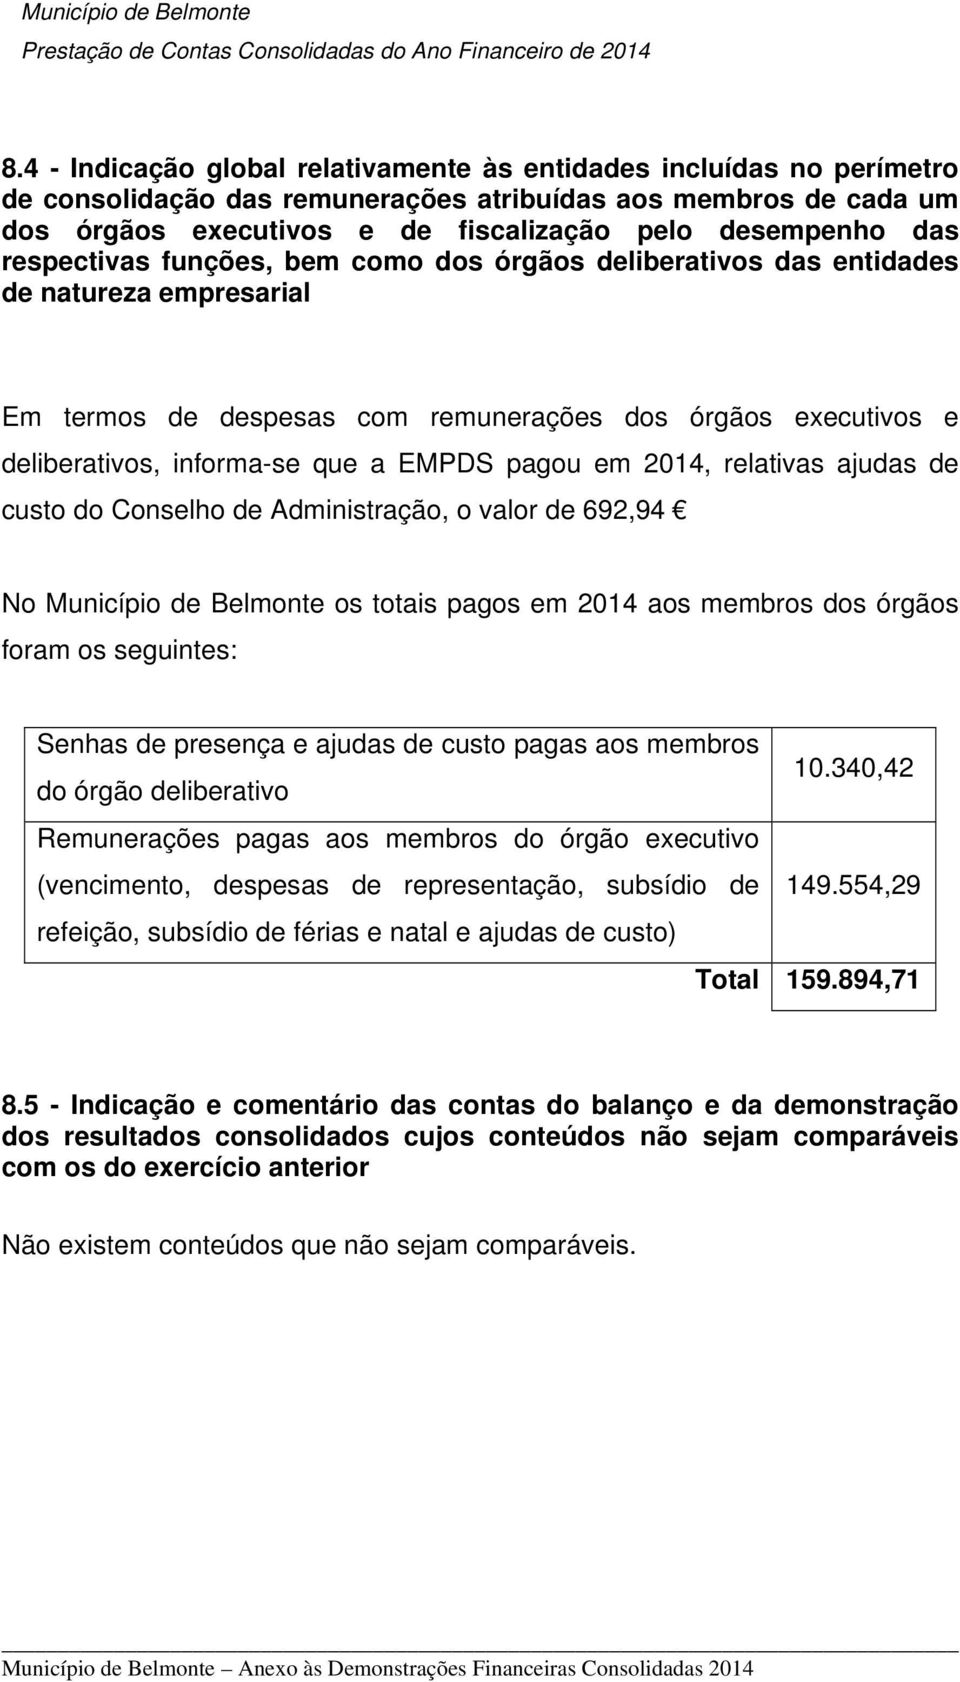 em 2014, relativas ajudas de custo do Conselho de Administração, o valor de 692,94 No Município de Belmonte os totais pagos em 2014 aos membros dos órgãos foram os seguintes: Senhas de presença e